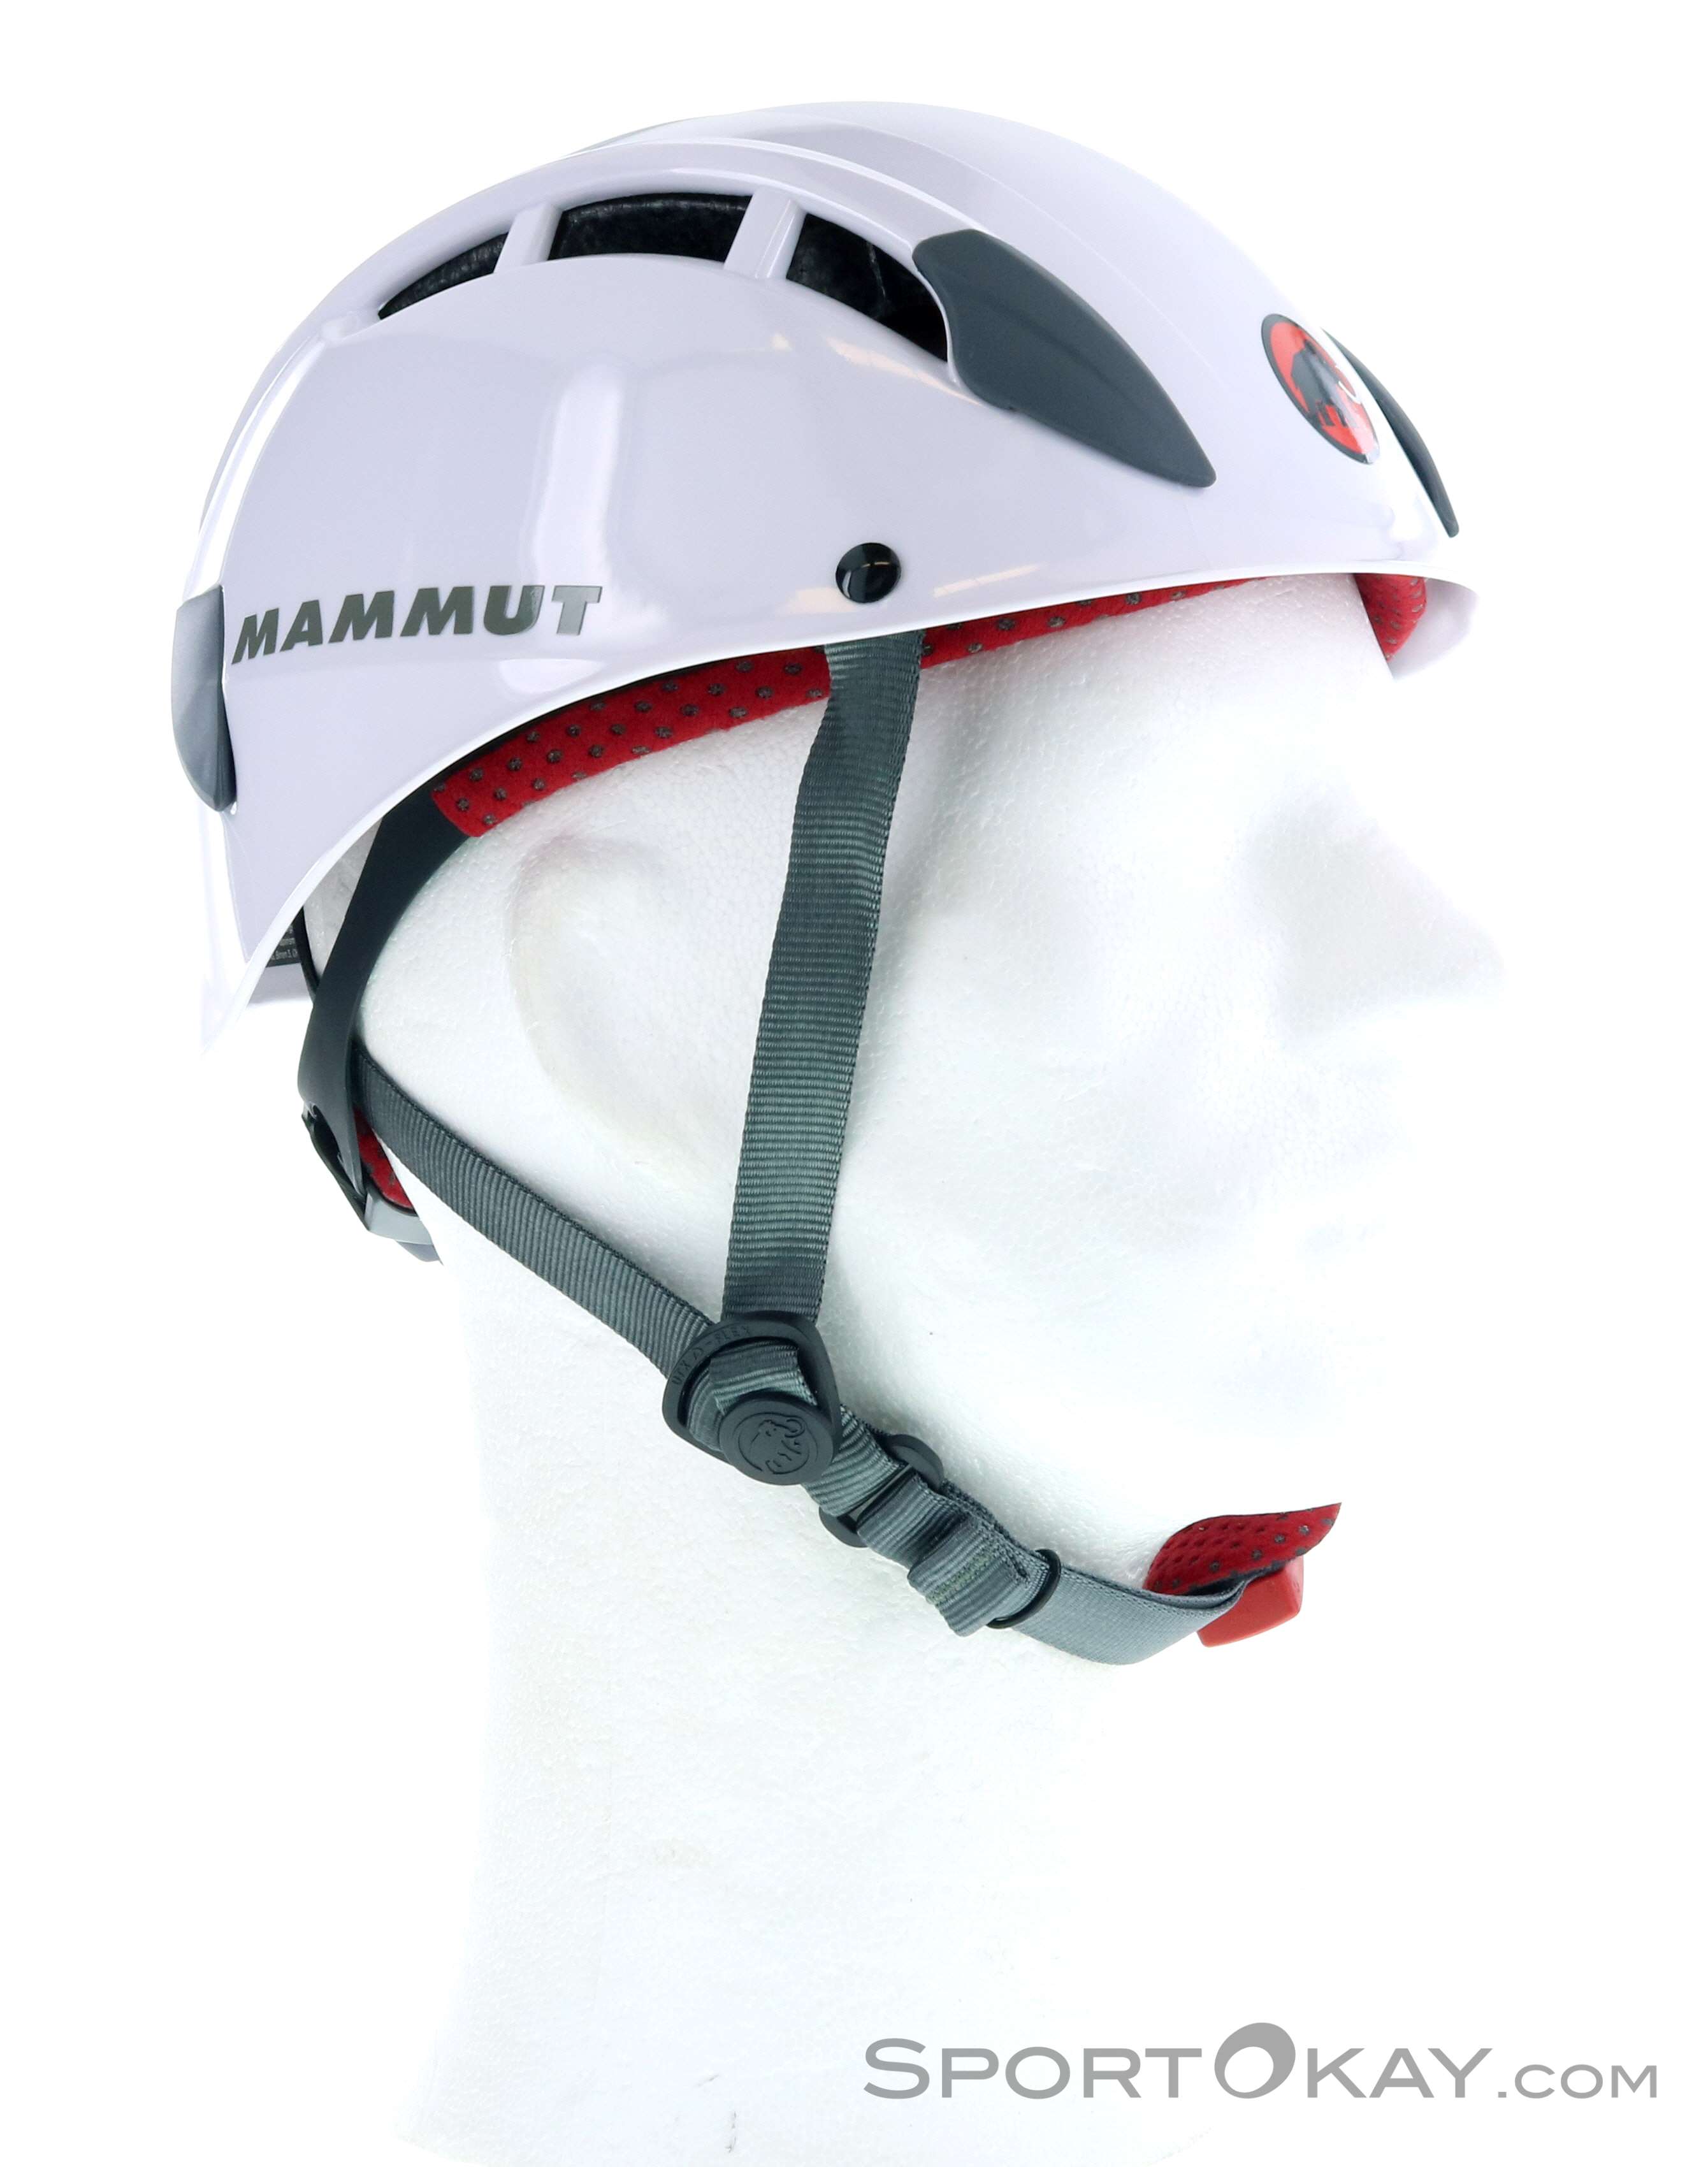 Well-ventilated climber’s helmet 4 colors MAMMUT SKYWALKER 2 